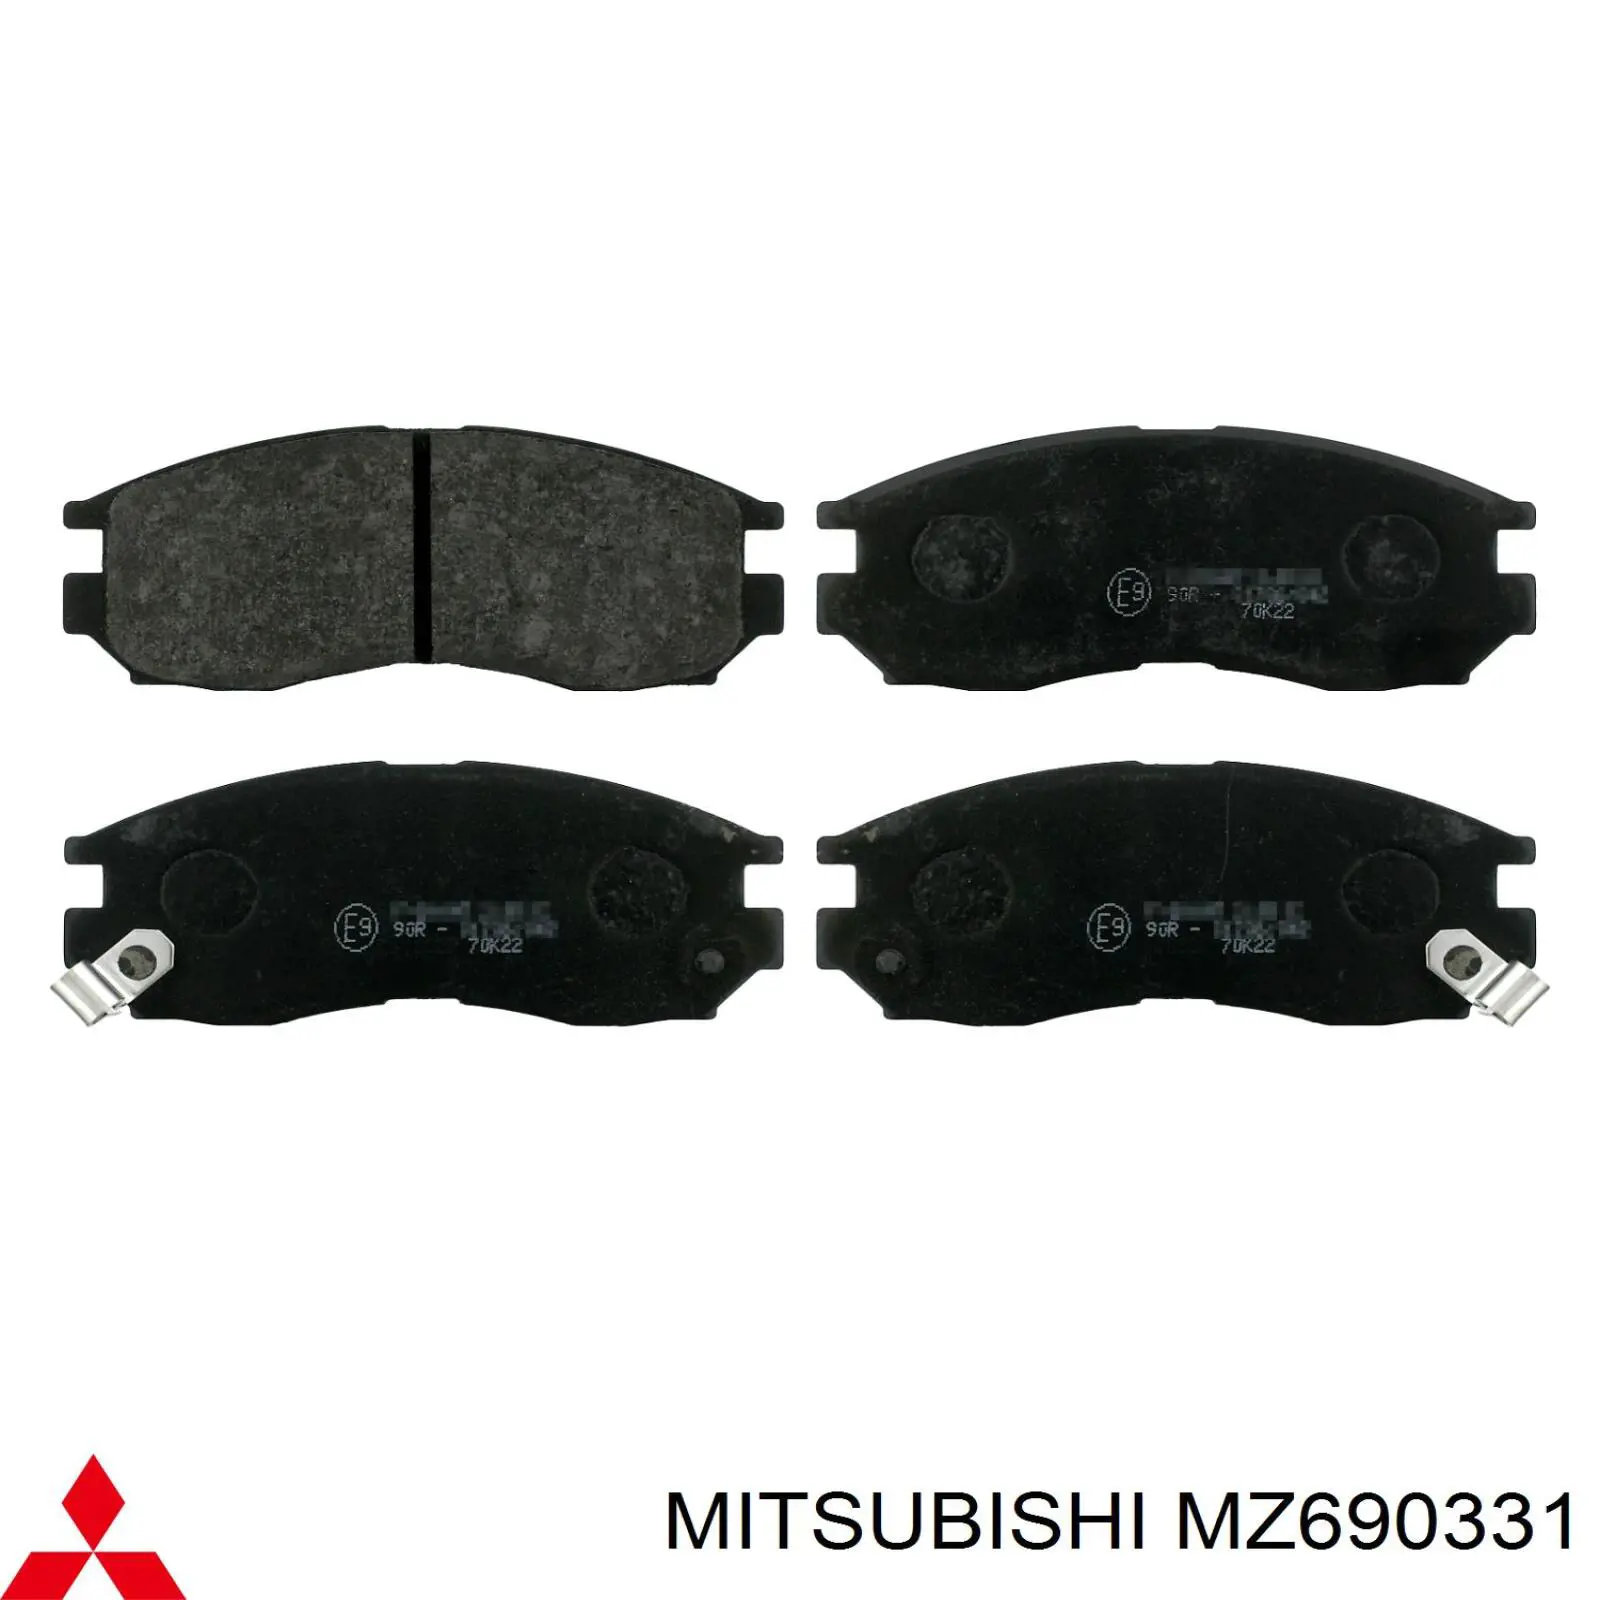 MZ690331 Mitsubishi pastillas de freno delanteras